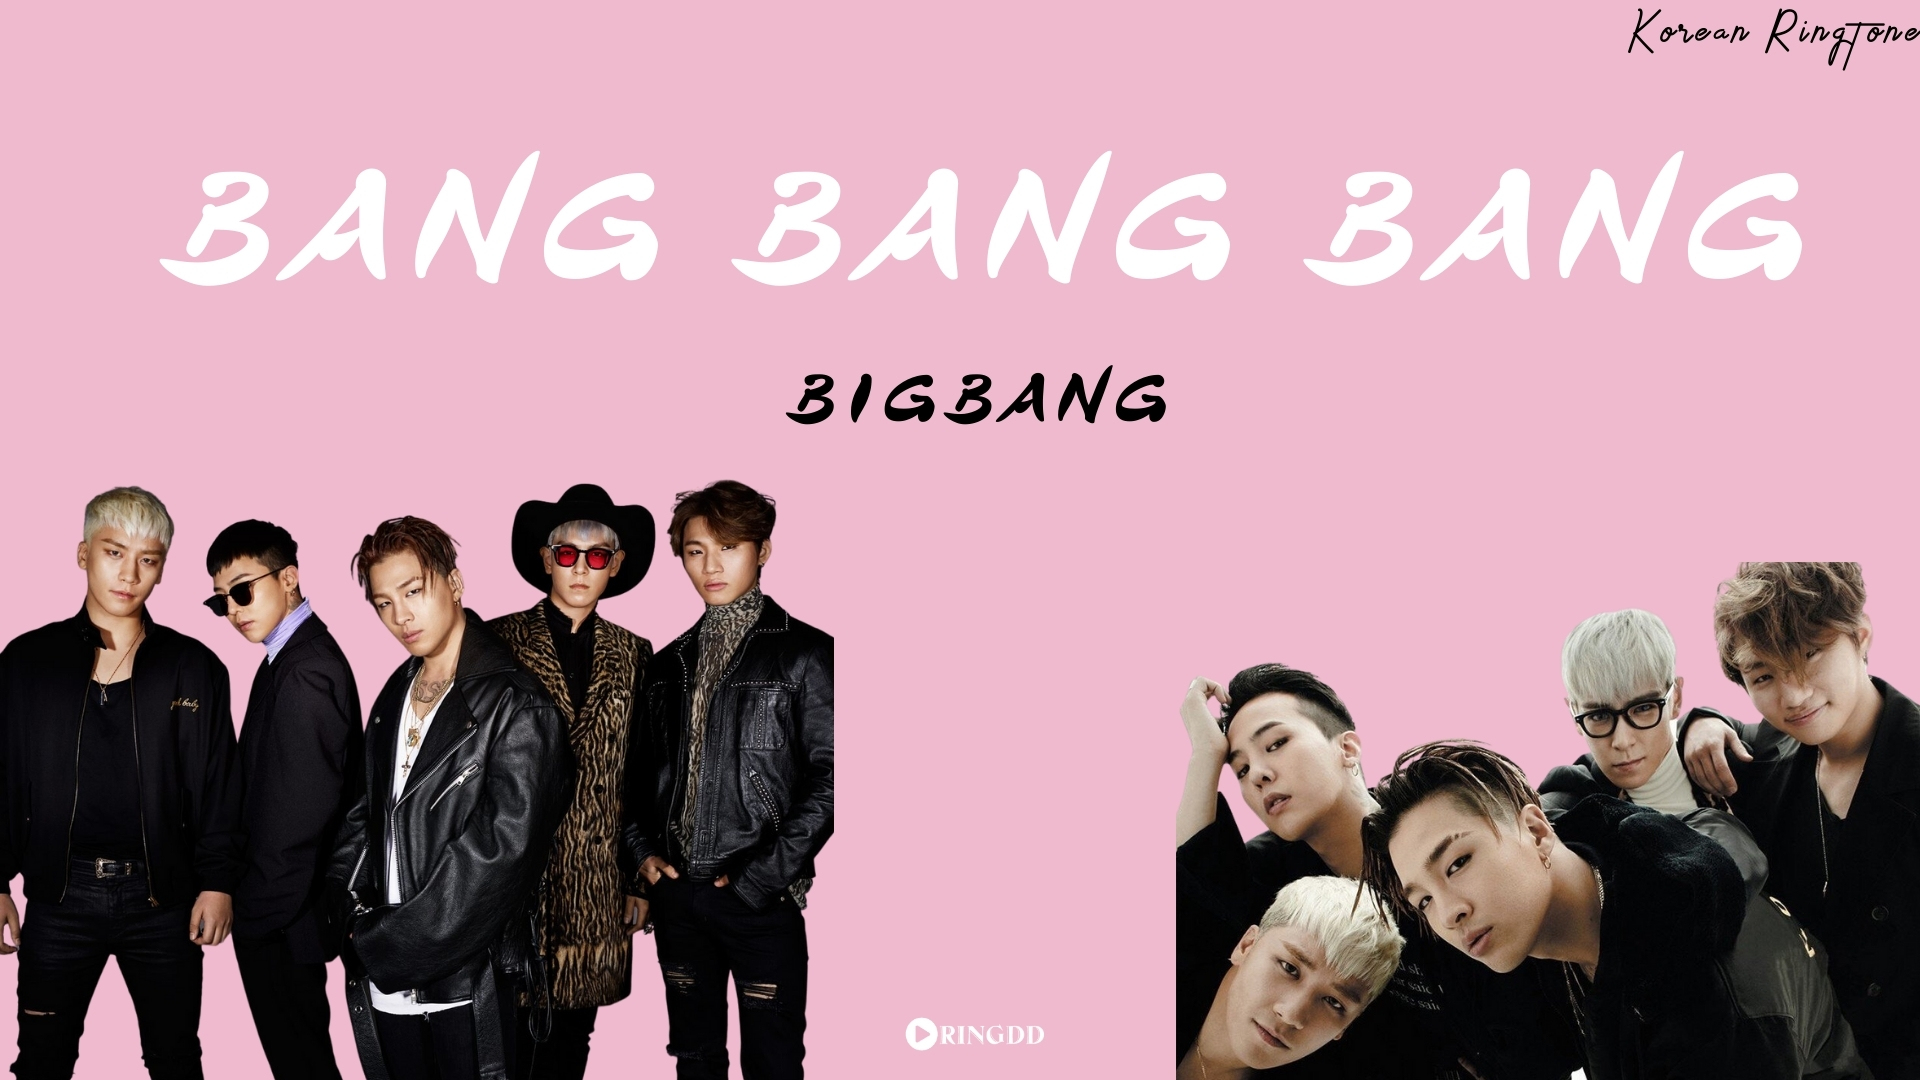 Bang bang bang born рингтон